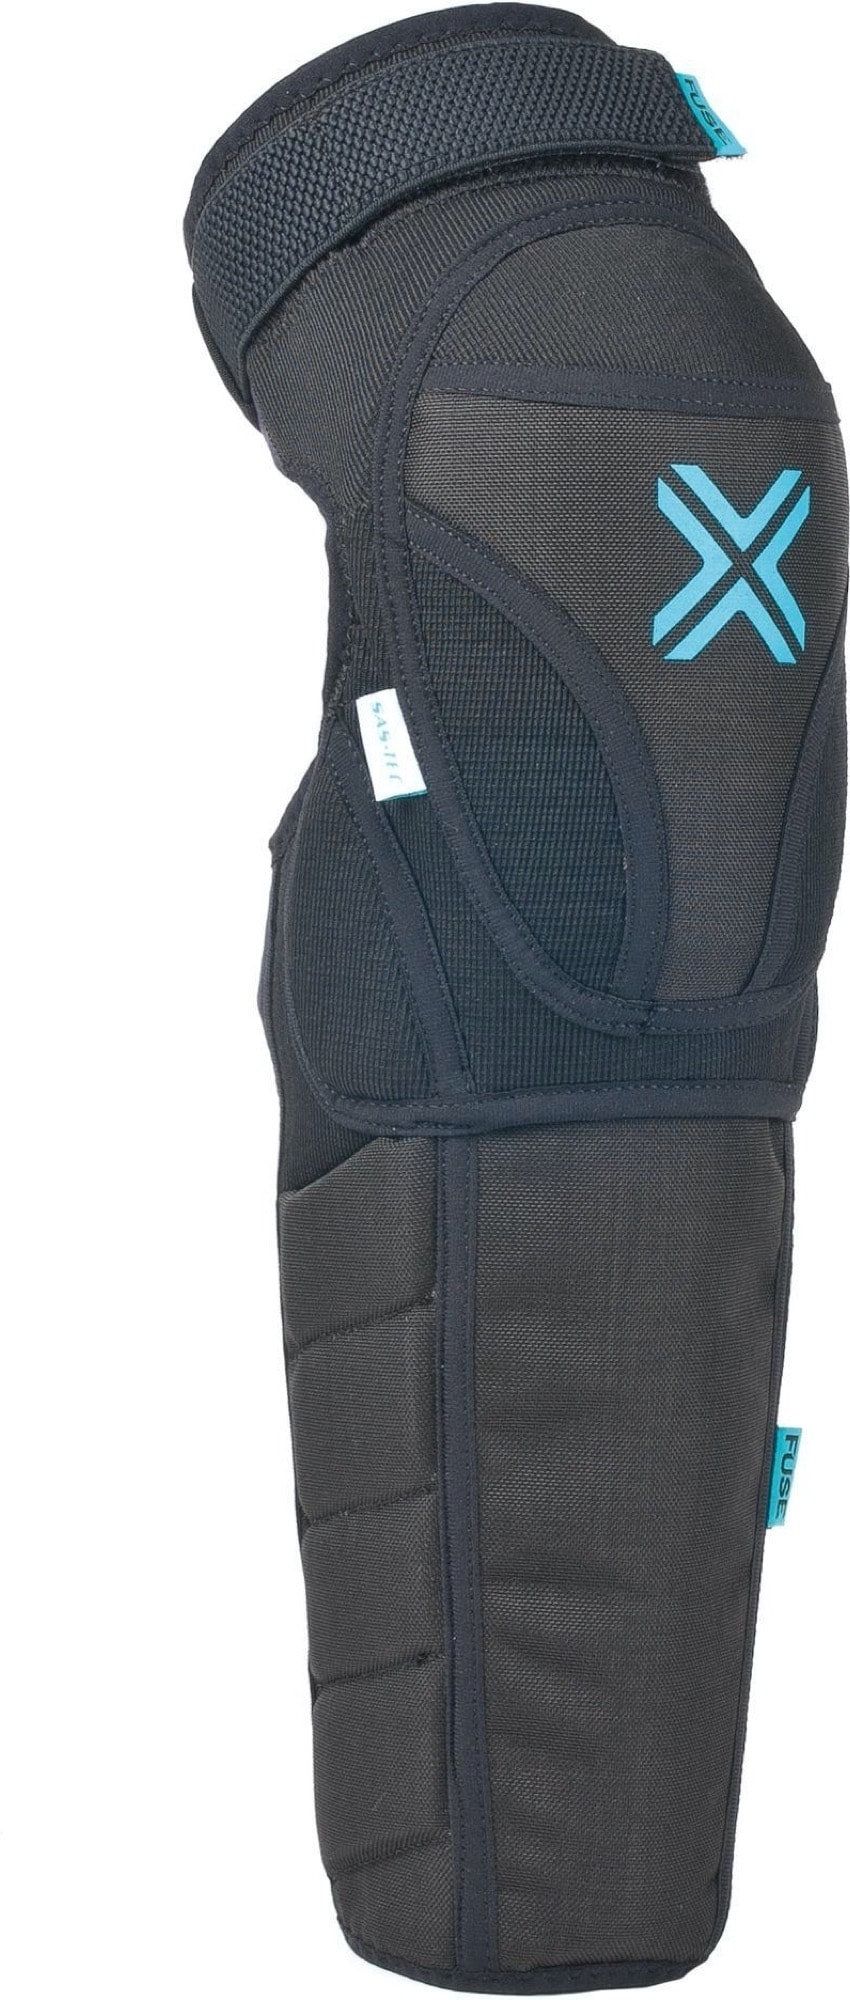 FUSE Protection Echo 100 Protège-genoux et protège-tibias pour enfants Noir  M-L • Votre boutique de BMX, VTT, skateboard et plus